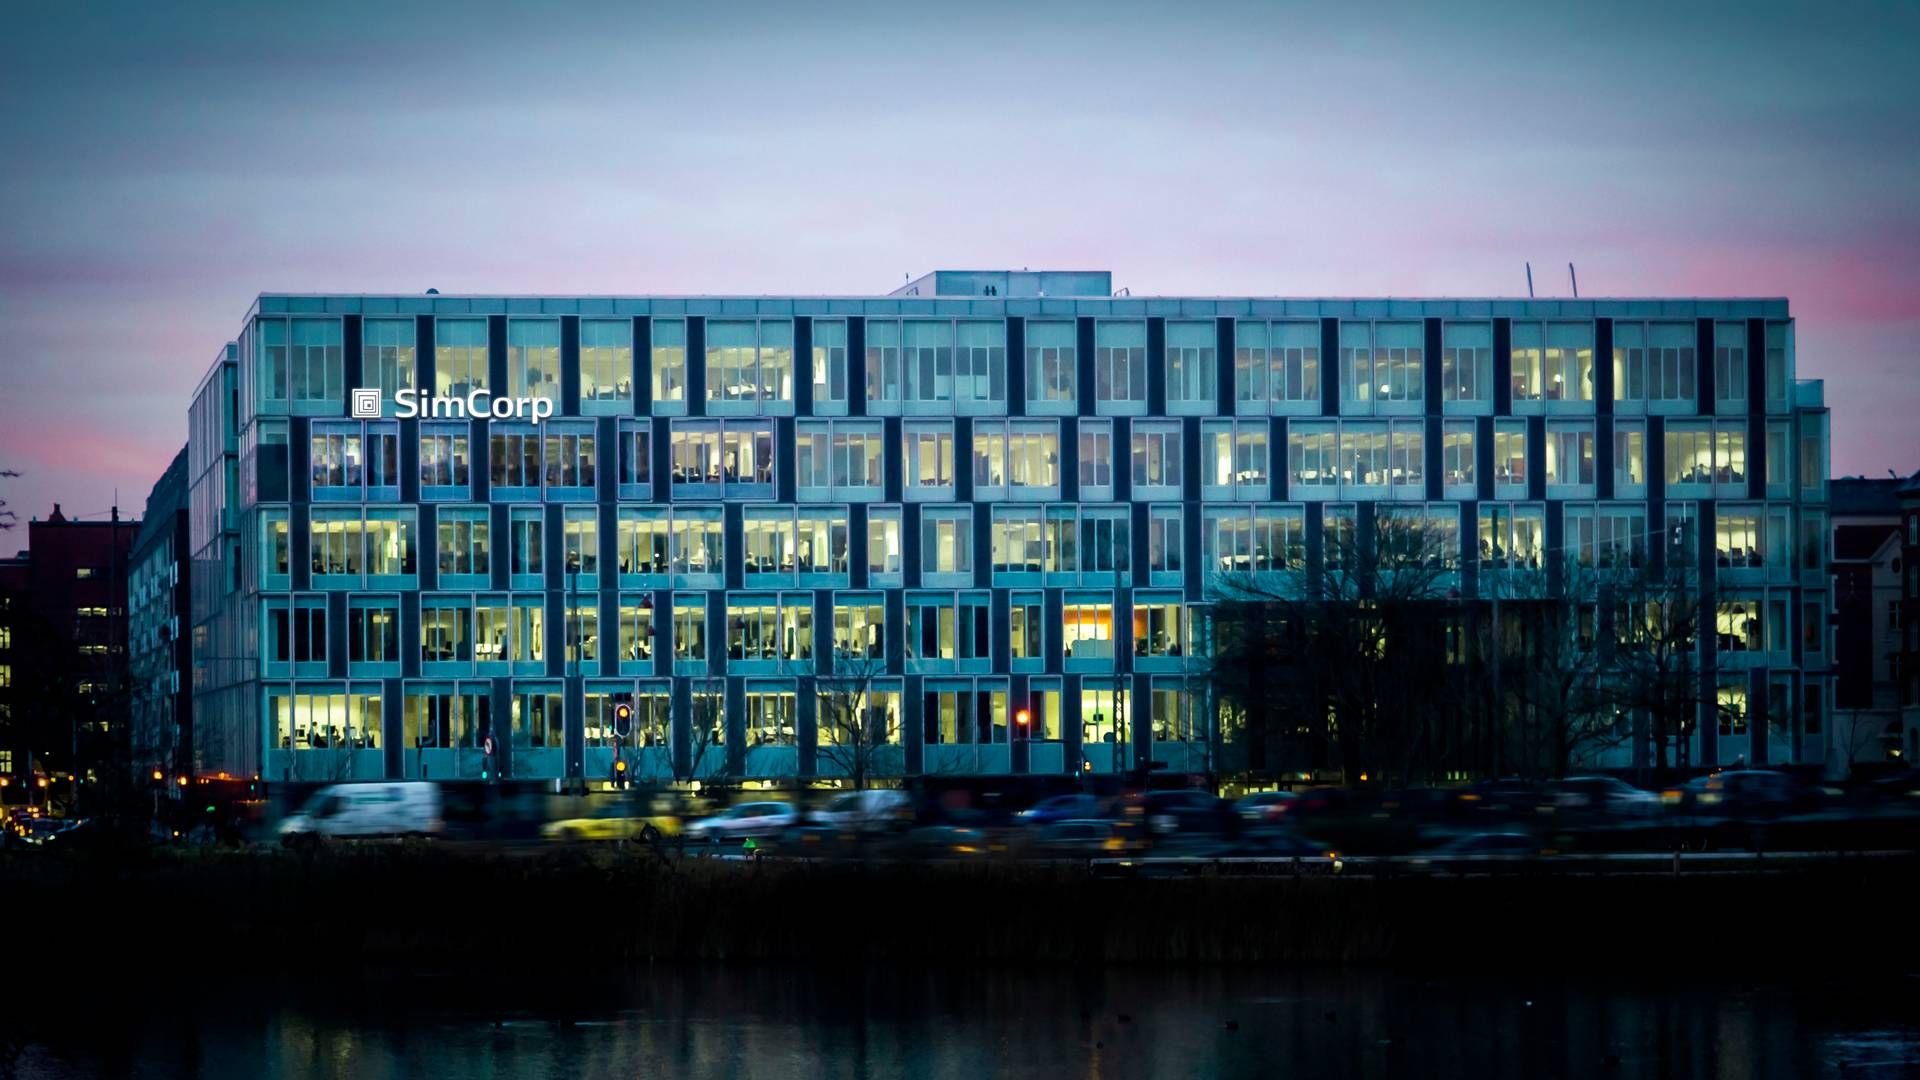 Den danske softwarevirksomhed Simcorp omsatte sidste år for 4,2 mia. kr. | Foto: Simcorp/pr